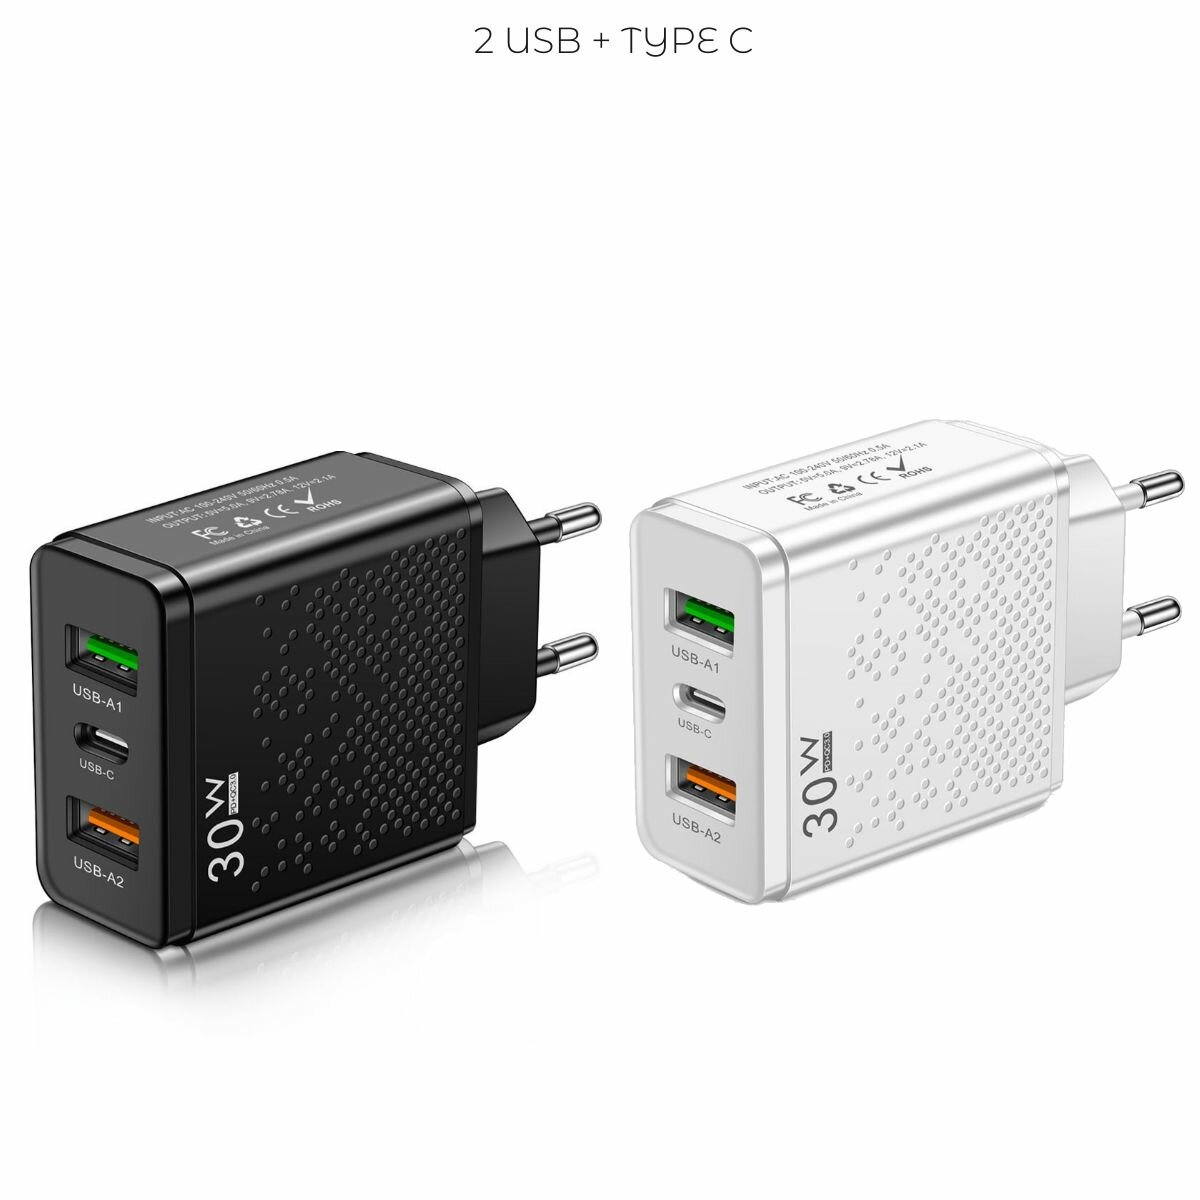 Сетевое зарядное устройство для электроники 2 USB + Type C / универсальный адаптер блок